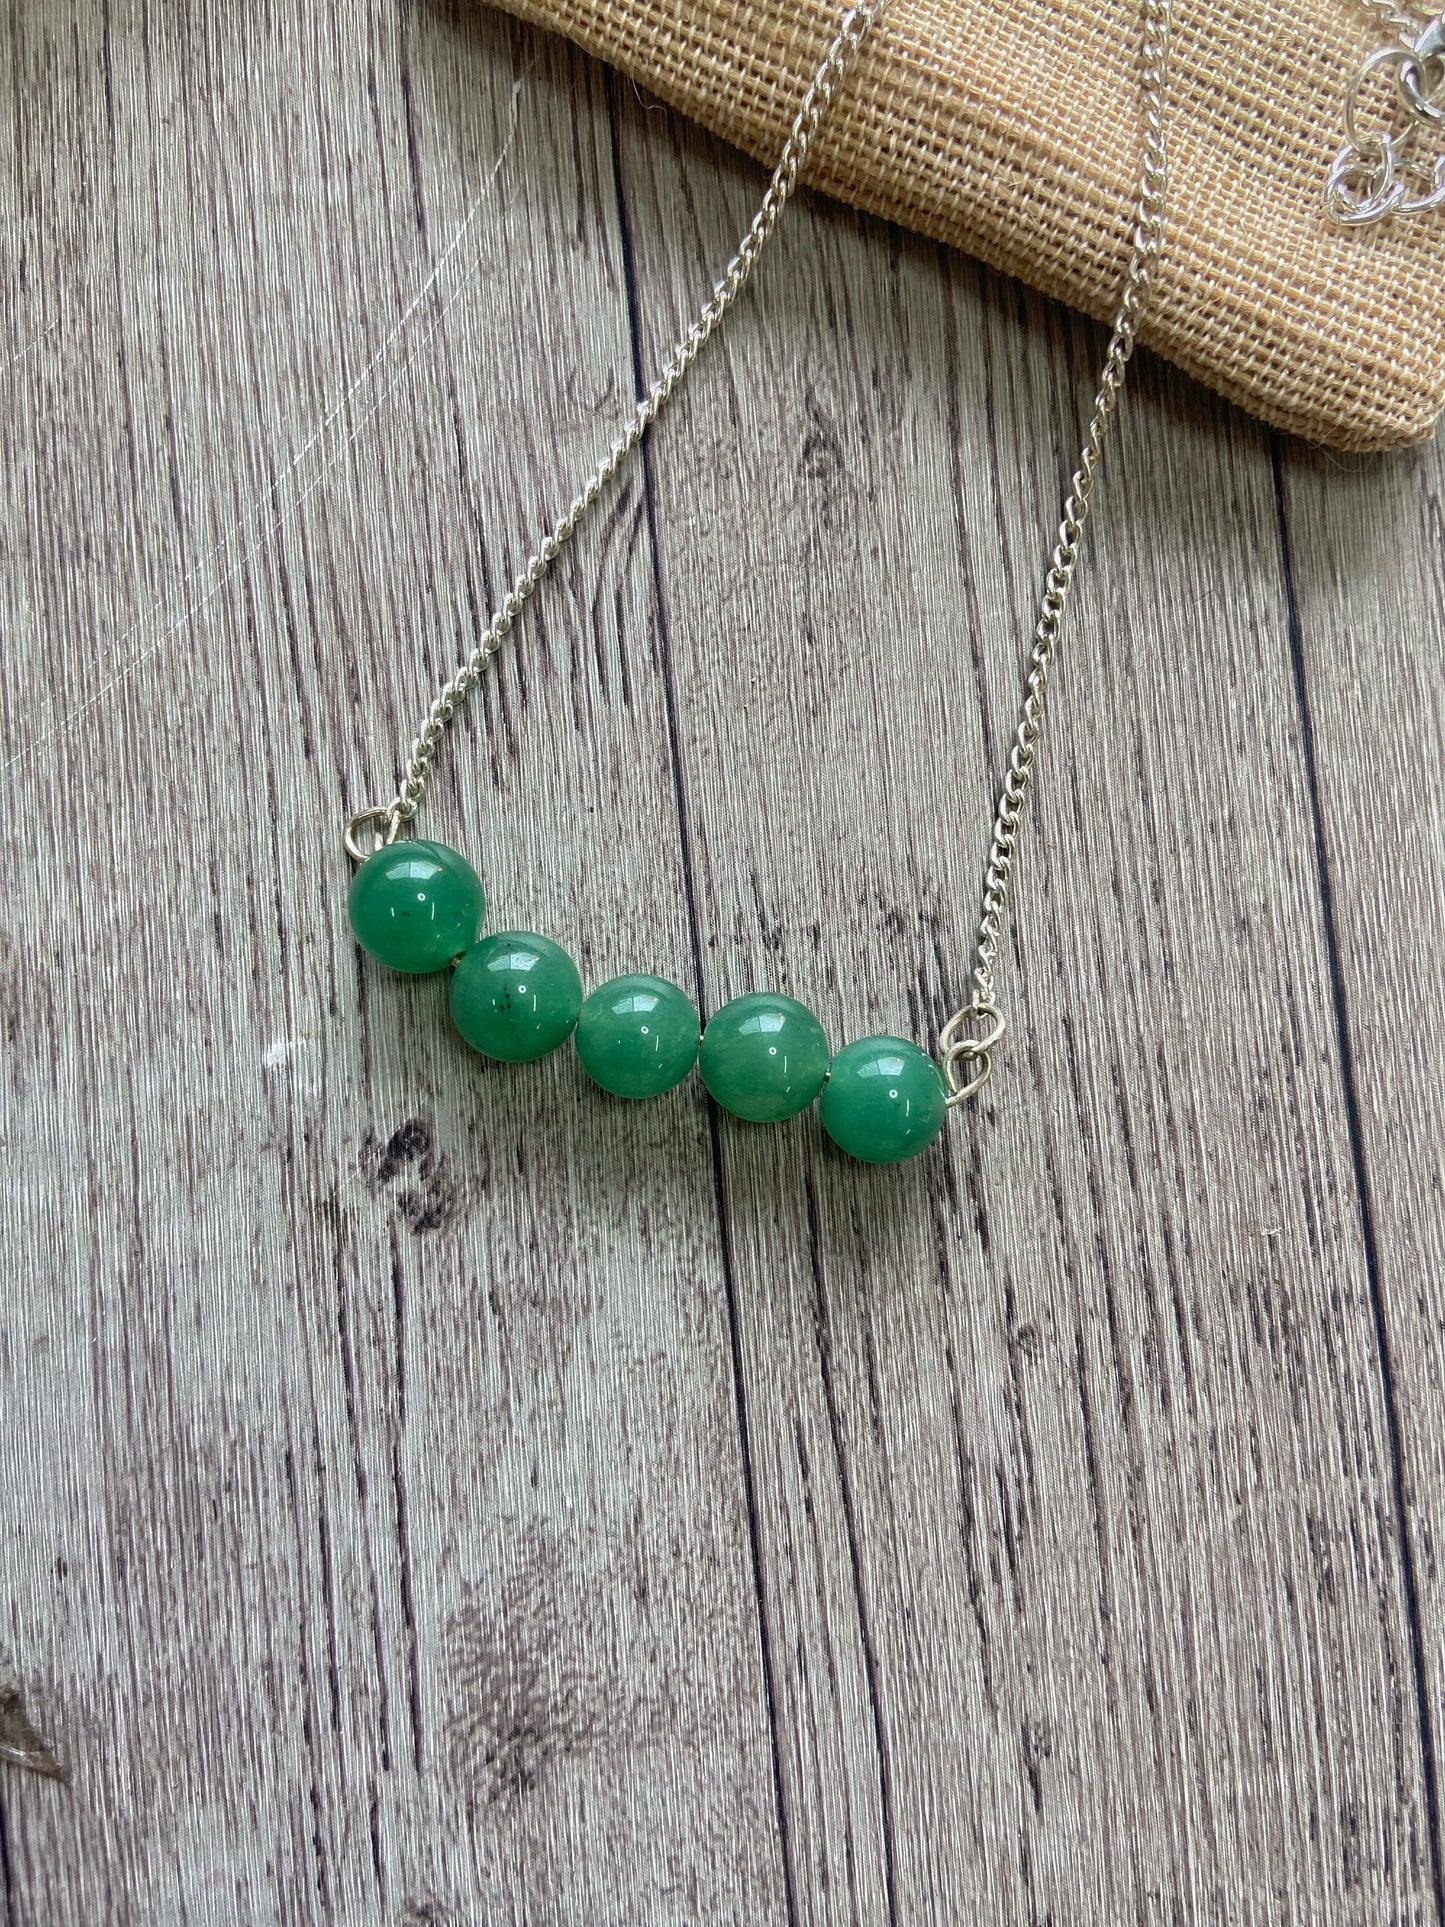 Green Aventurine Necklace | Luck & Abundance Crystal Jewellery